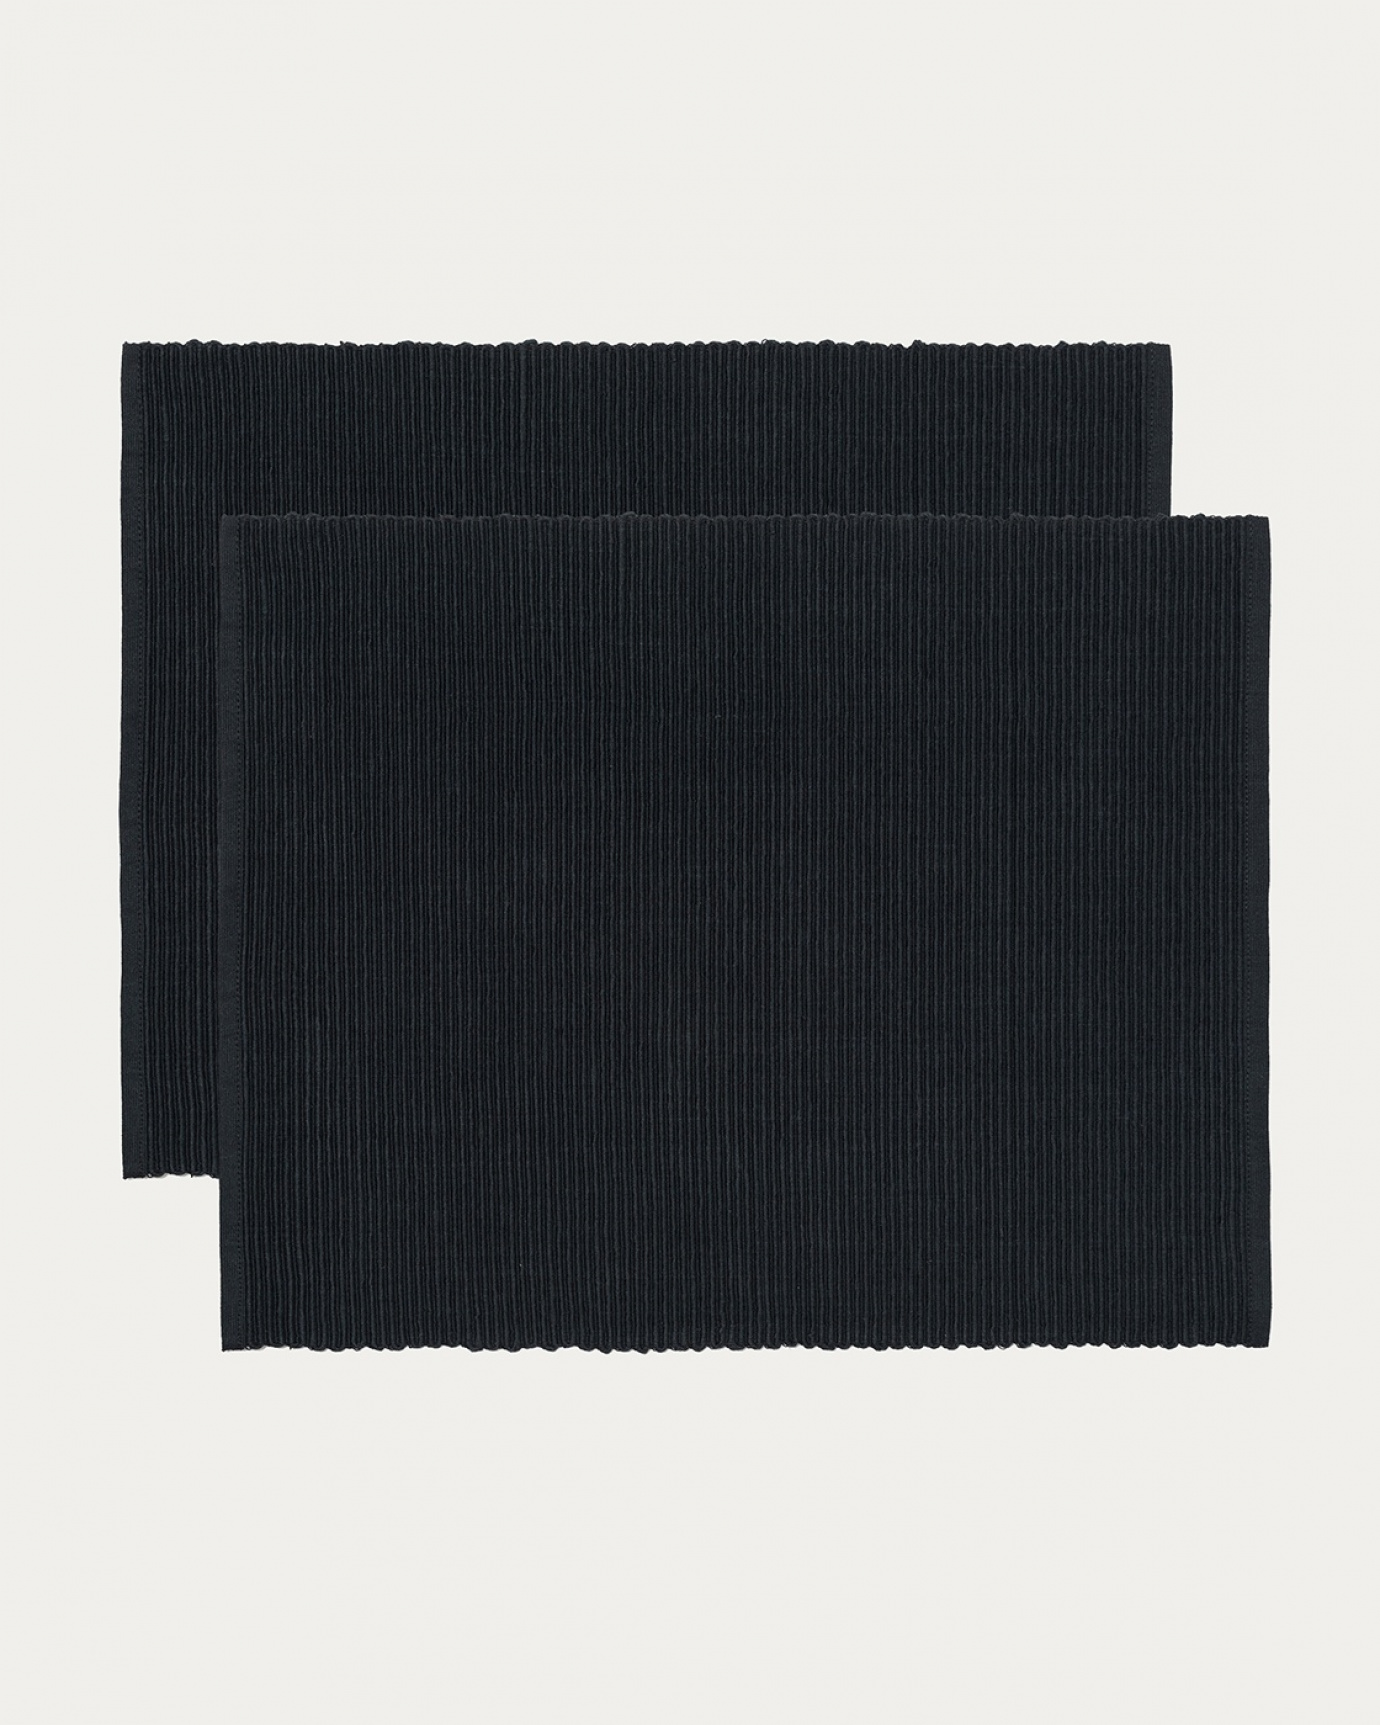 Produktbild schwarz UNI Tischset aus weicher Baumwolle in Rippenqualität von LINUM DESIGN. Größe 35x46 cm und in 2er-Pack verkauft.